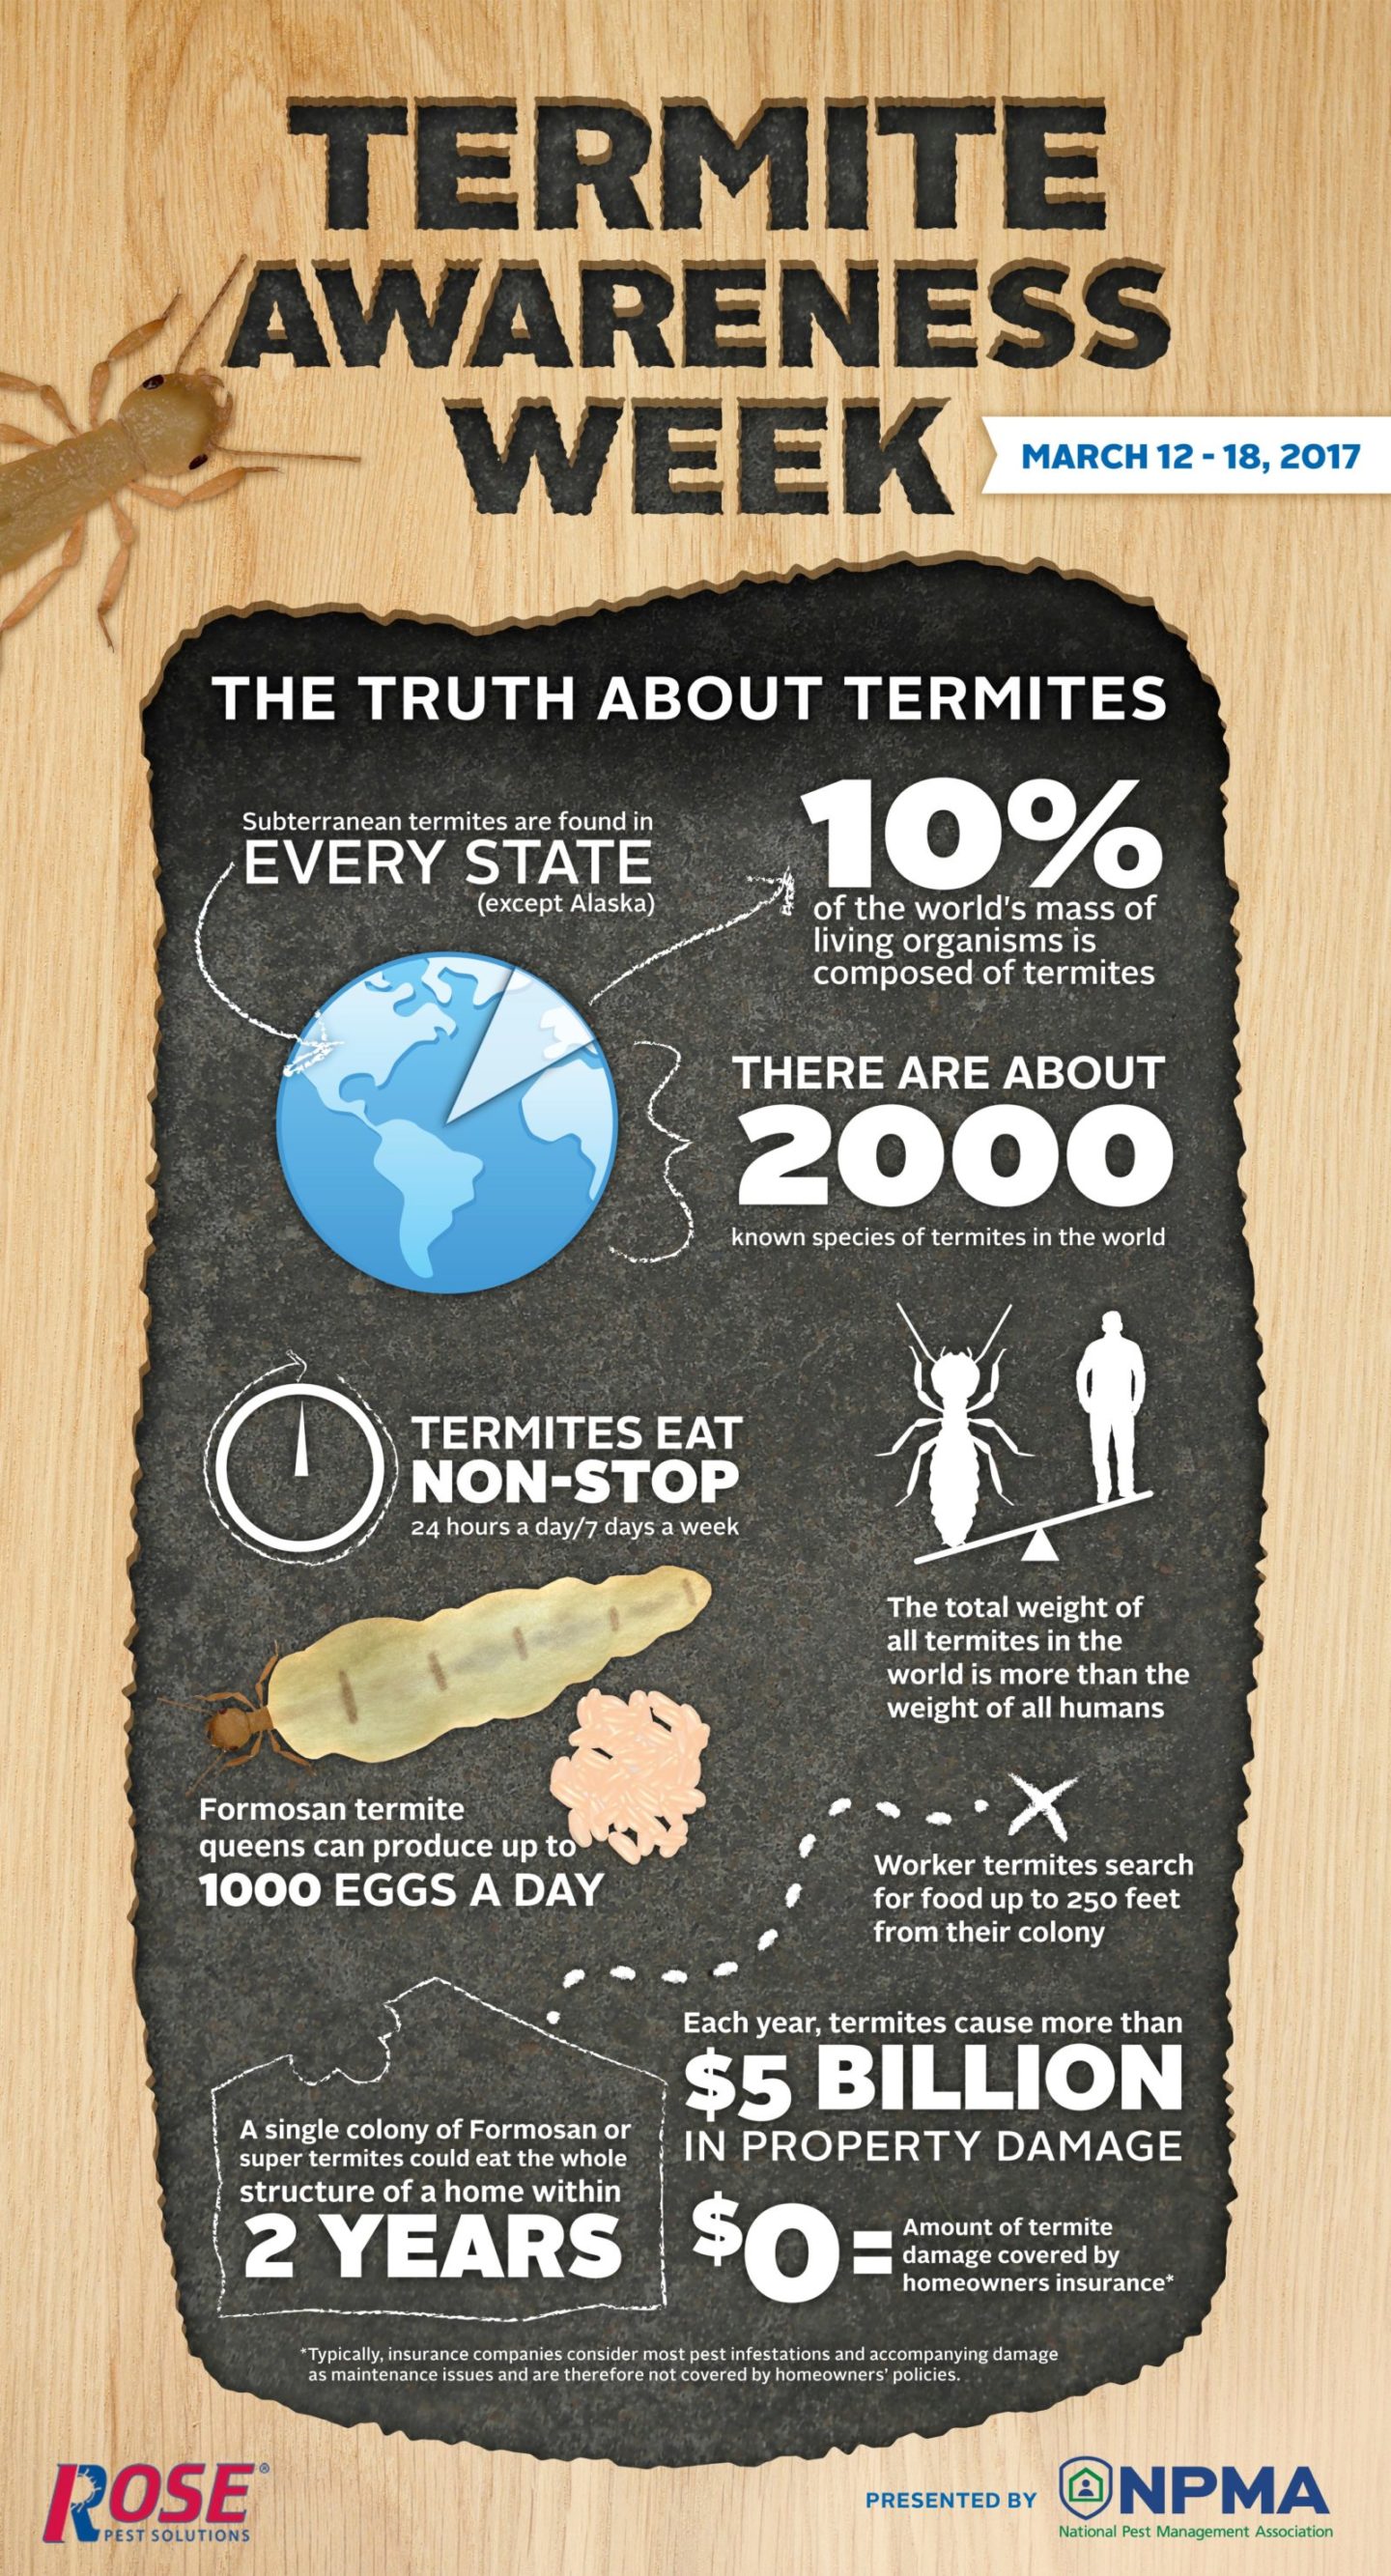 rose_termite-awareness-week-infographic-2017-.jpg